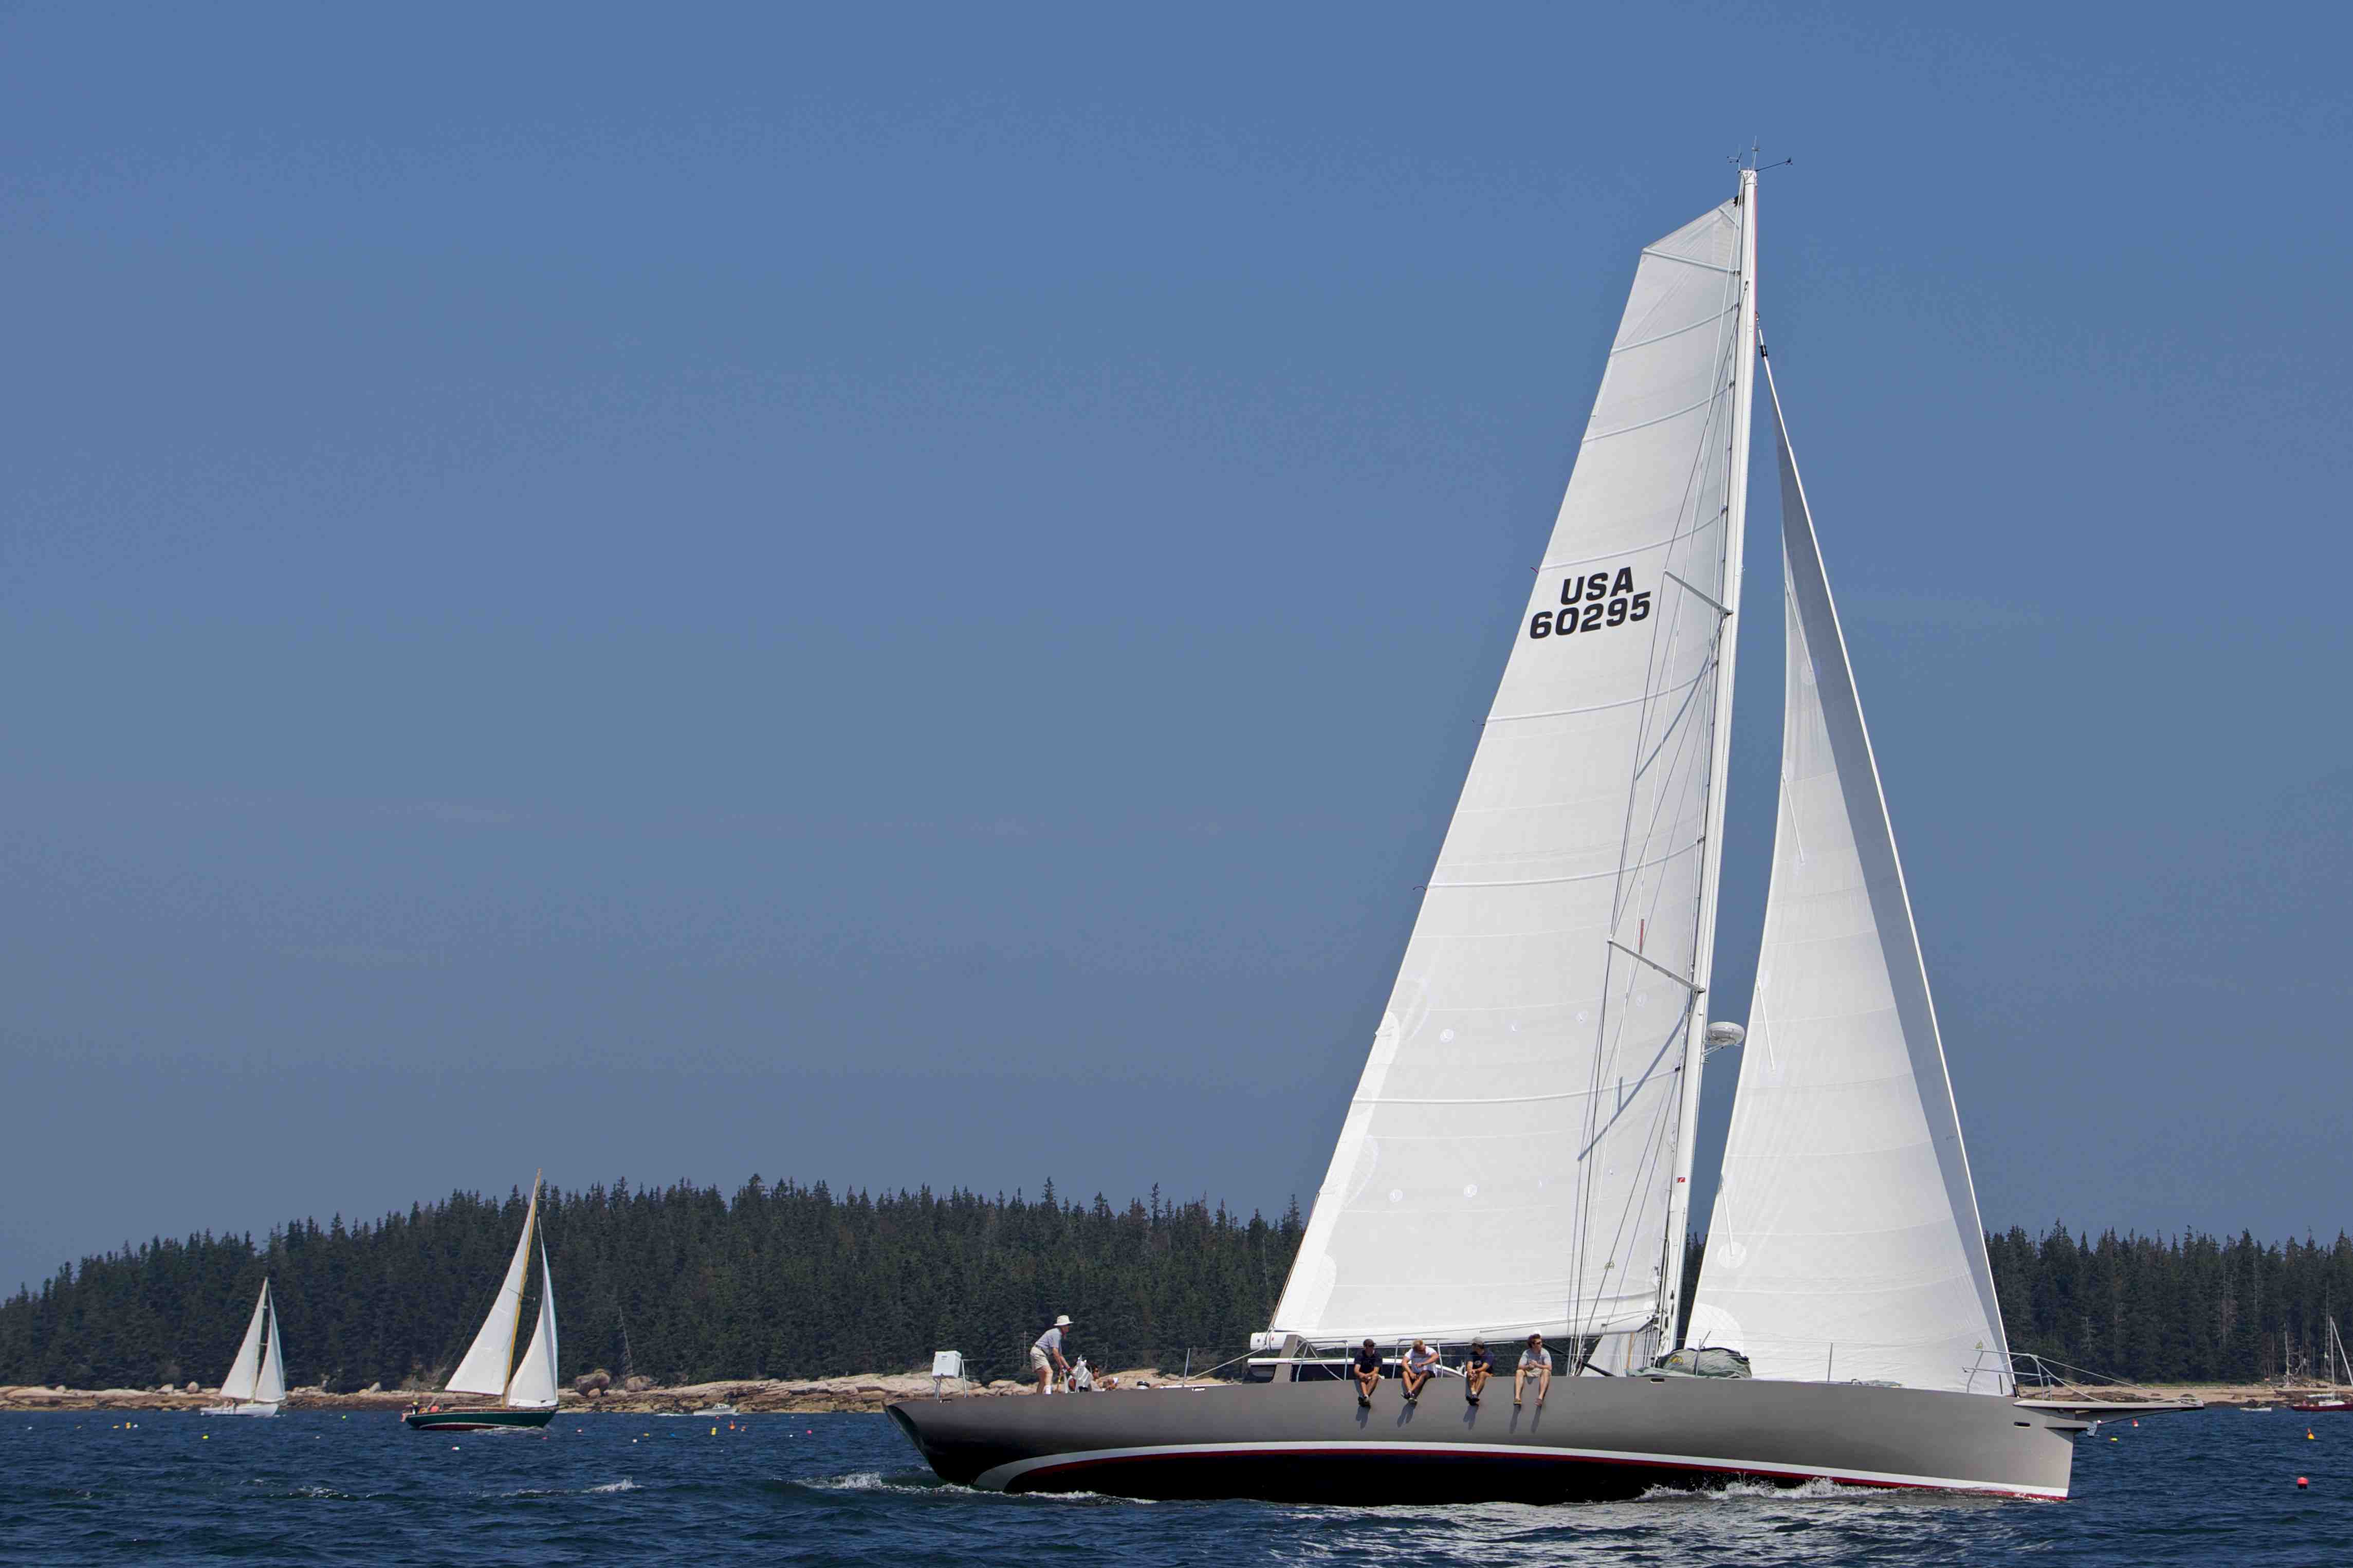 racing sail yachts